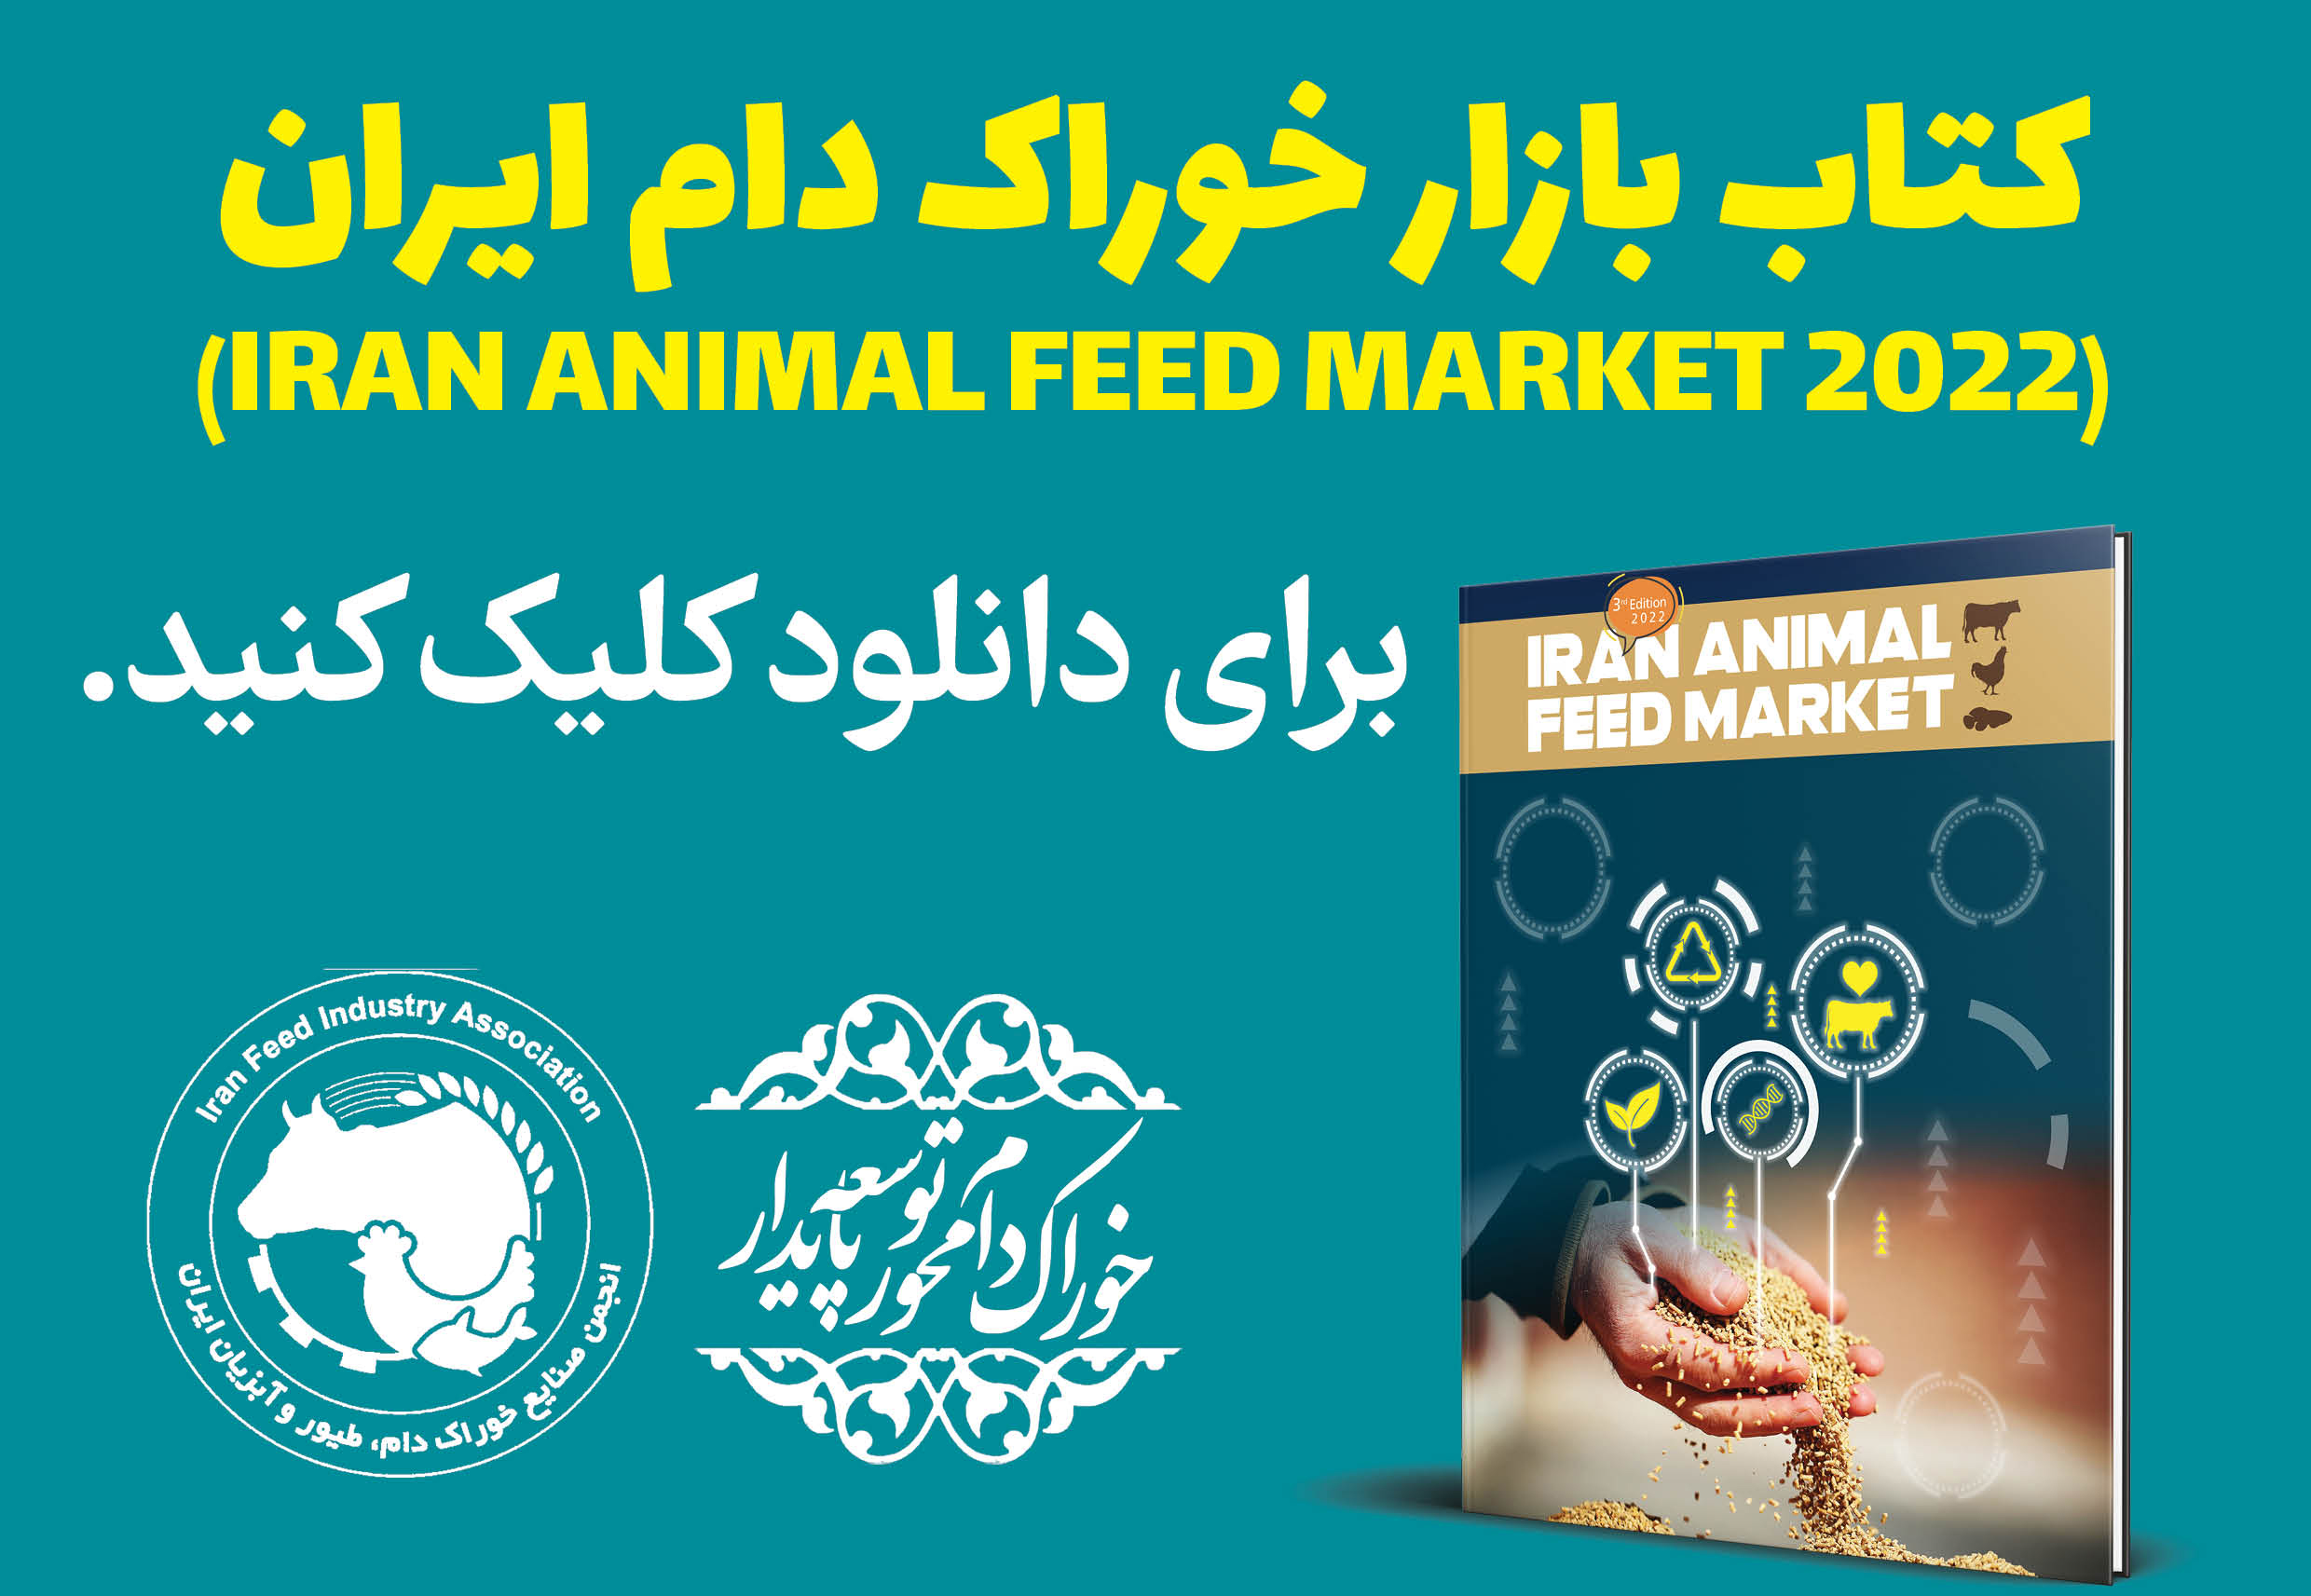 Iran Feed Industry Association Website